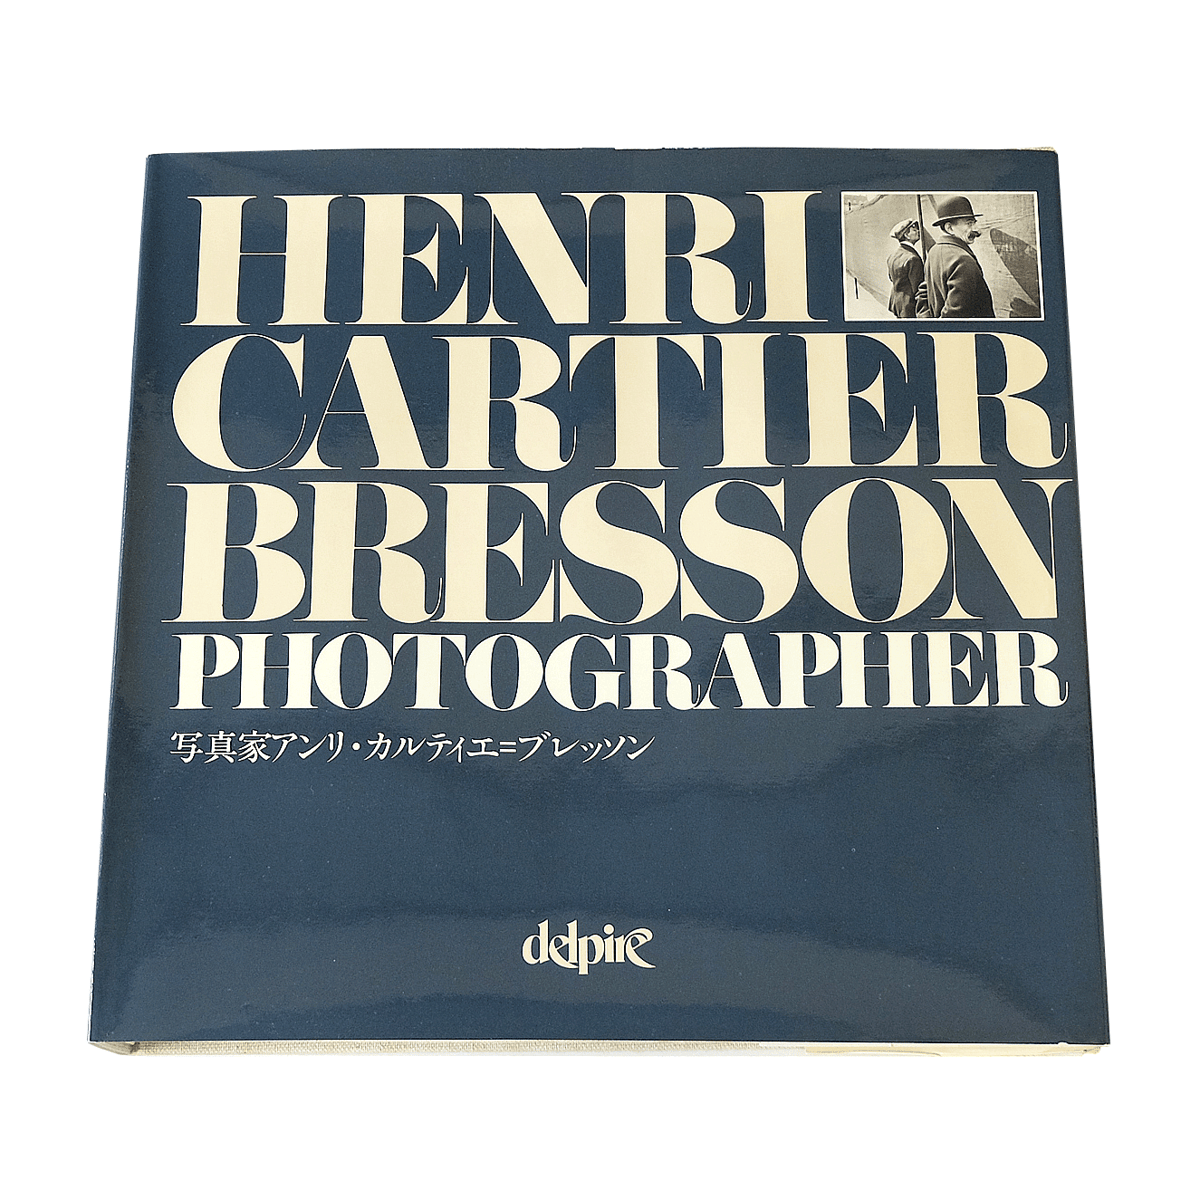 1980初版HENRI CARTIER BRESSON PHOTOGRAPHER